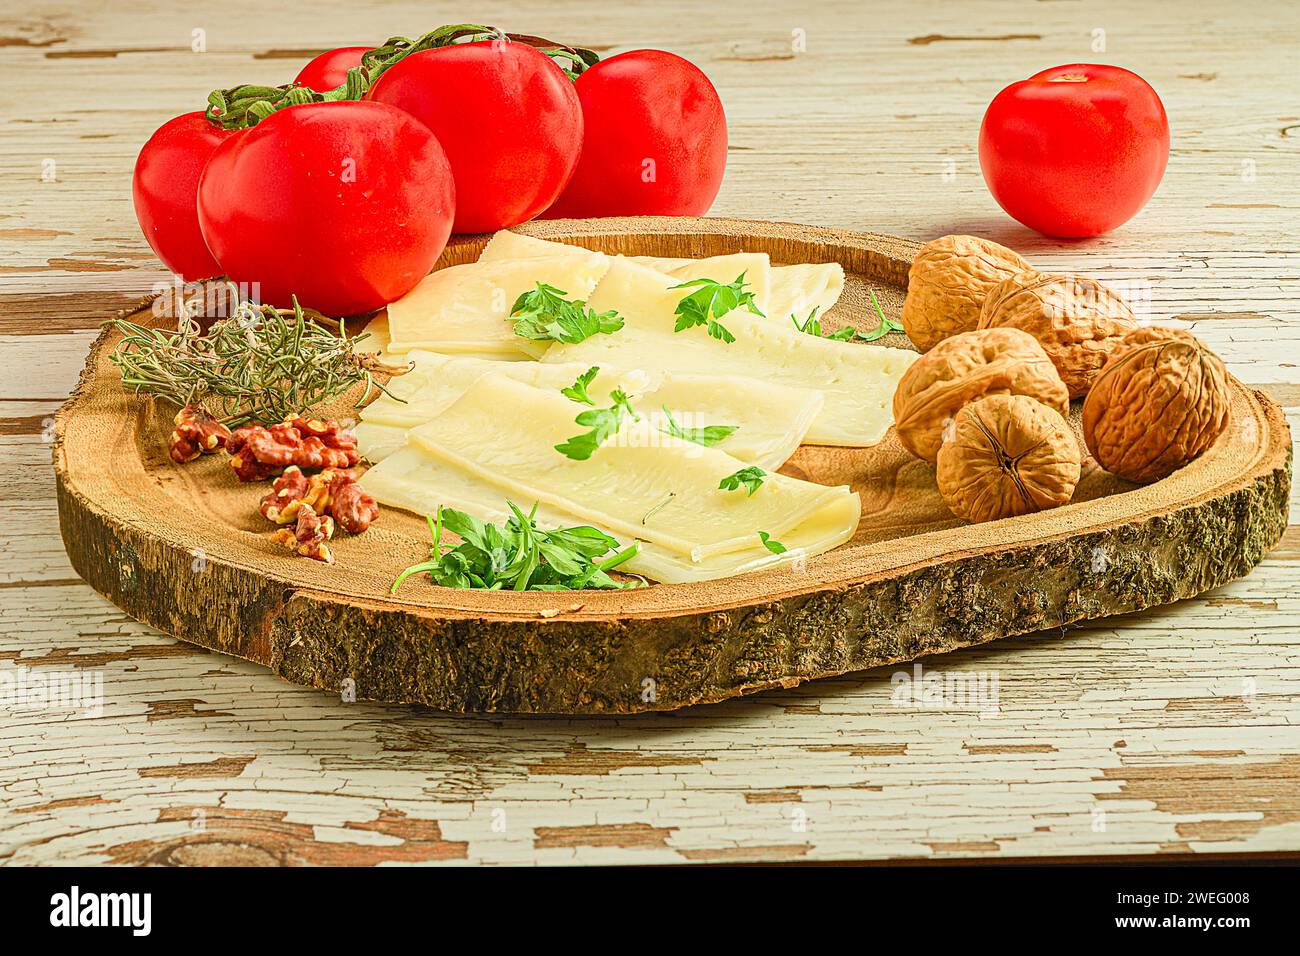 Un piatto con formaggio, pomodori, noci ed erbe aromatiche disposti su un tavolo di legno Foto Stock